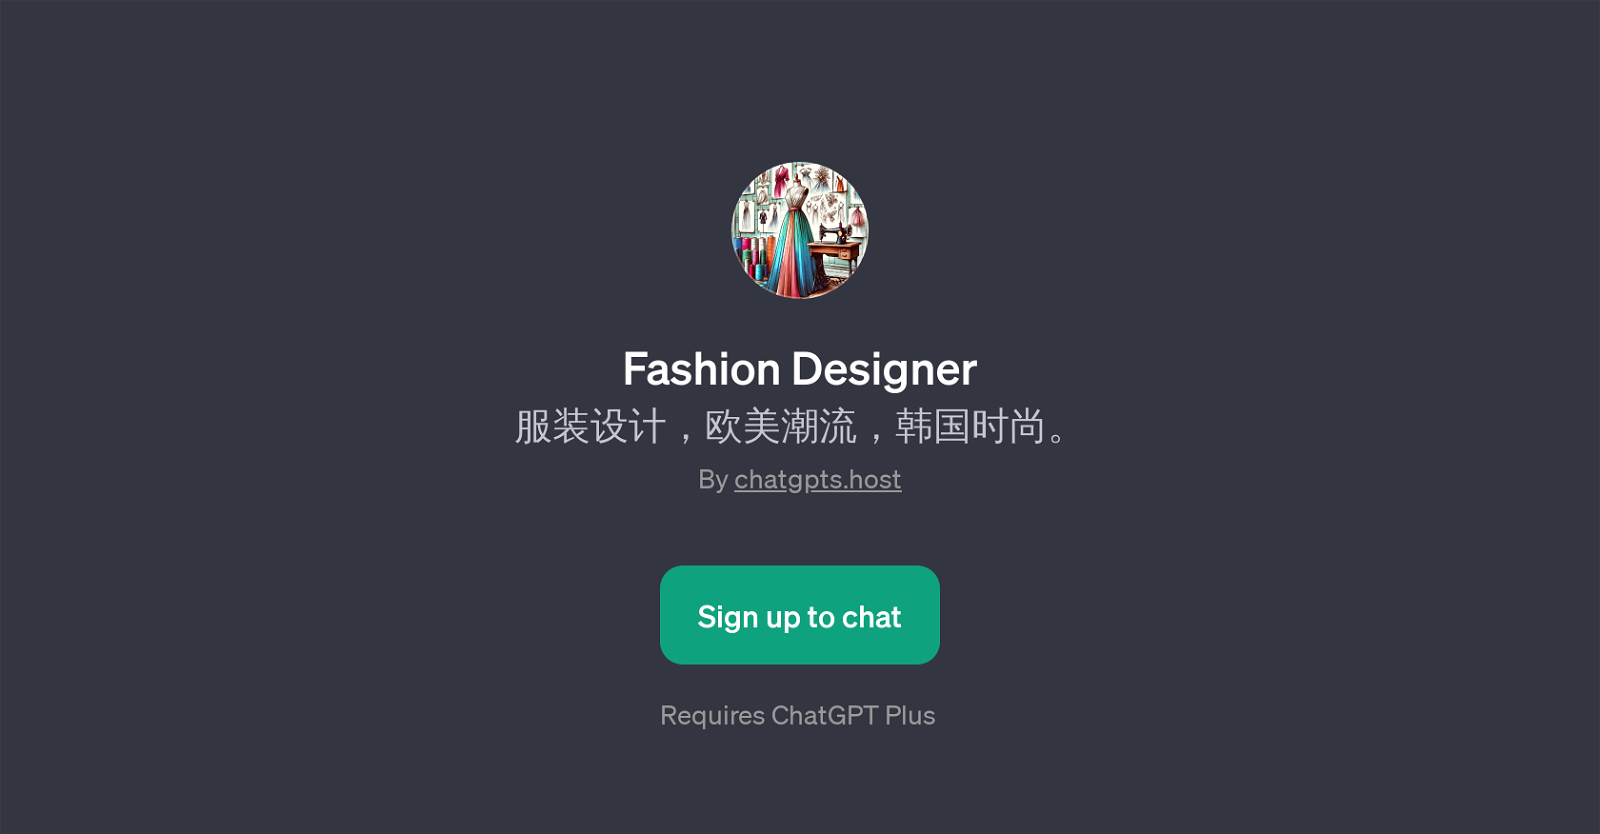 Fashion Designer website